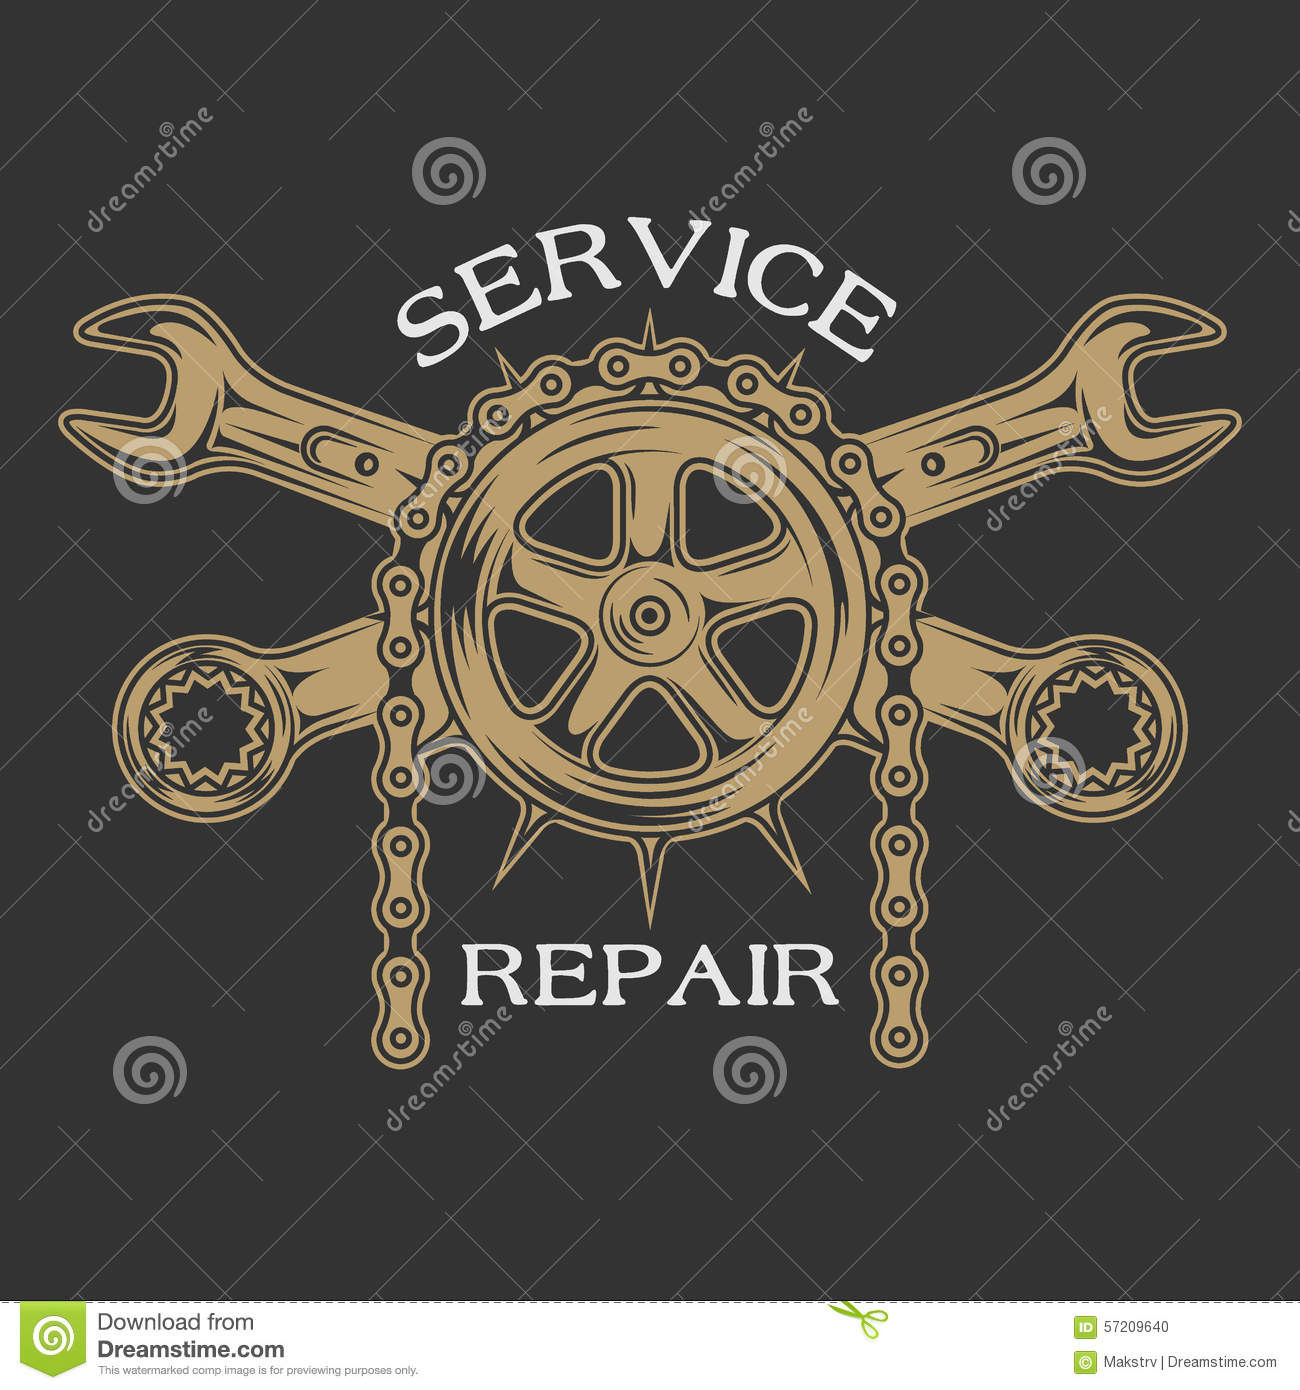 ro pic service and repair.jpg